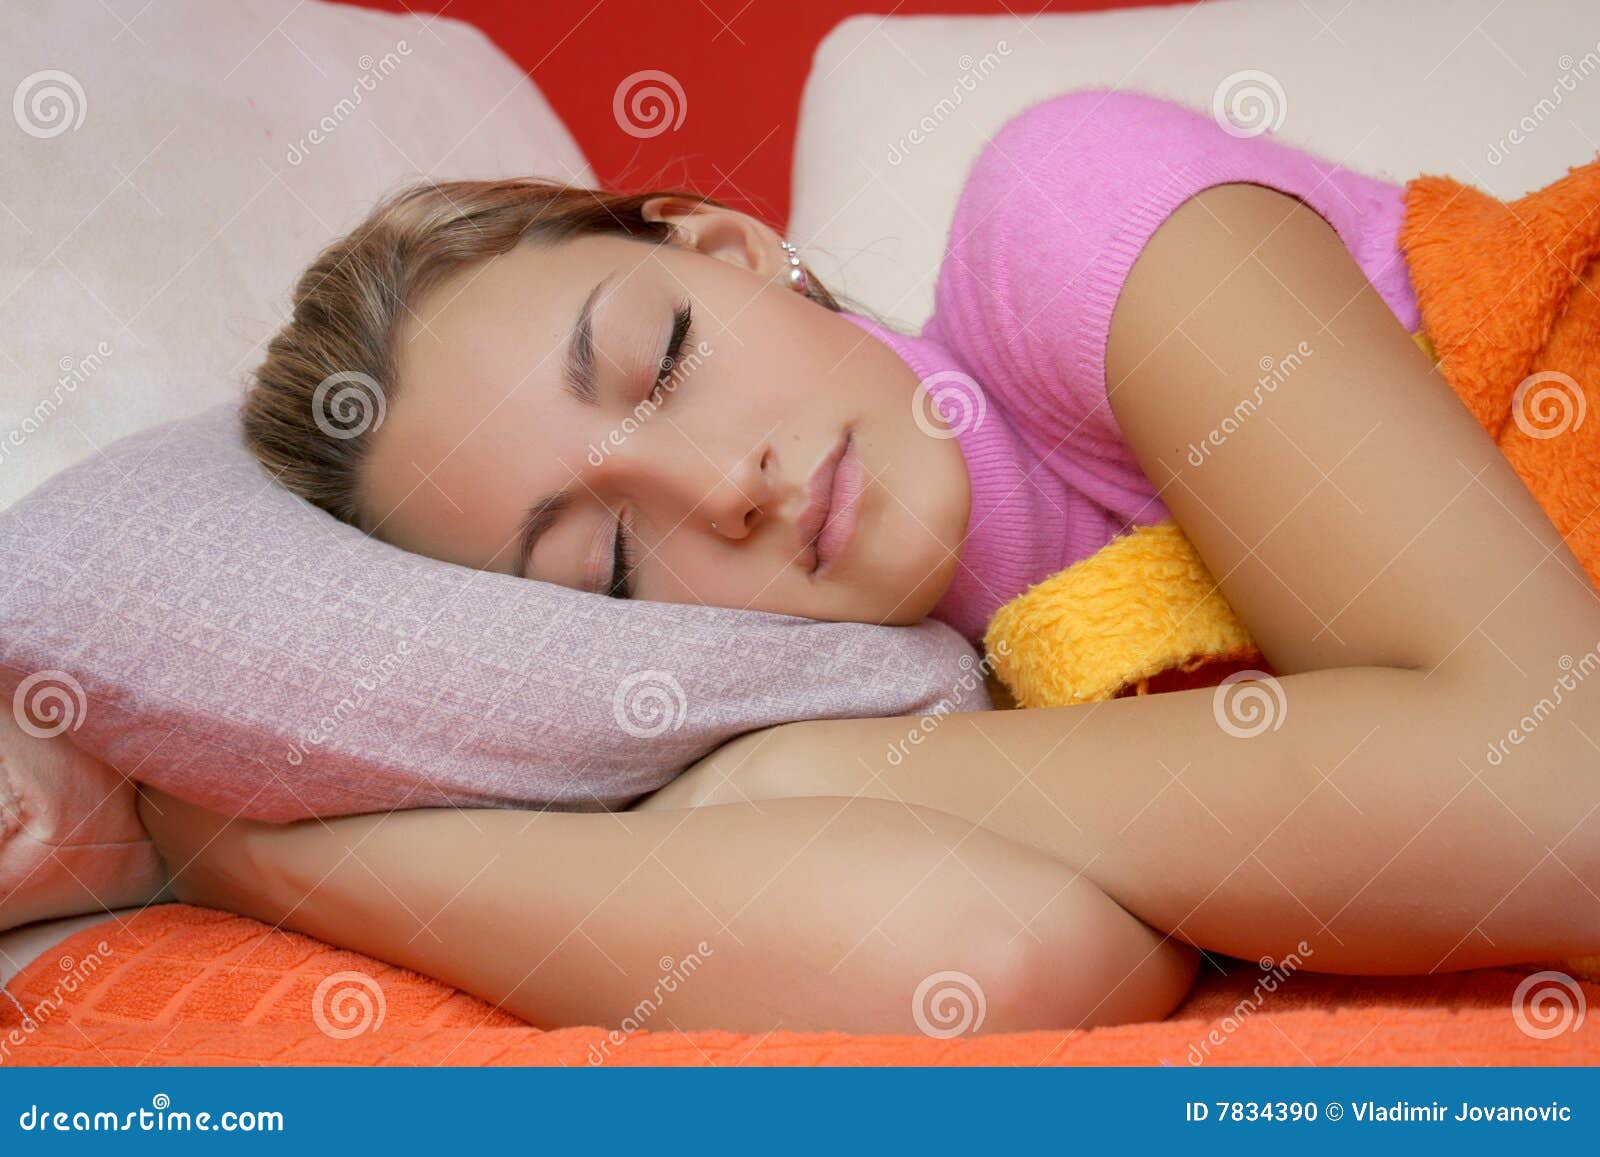 Sleeping Teen Girl Stock Photo Image Of Peaceful D